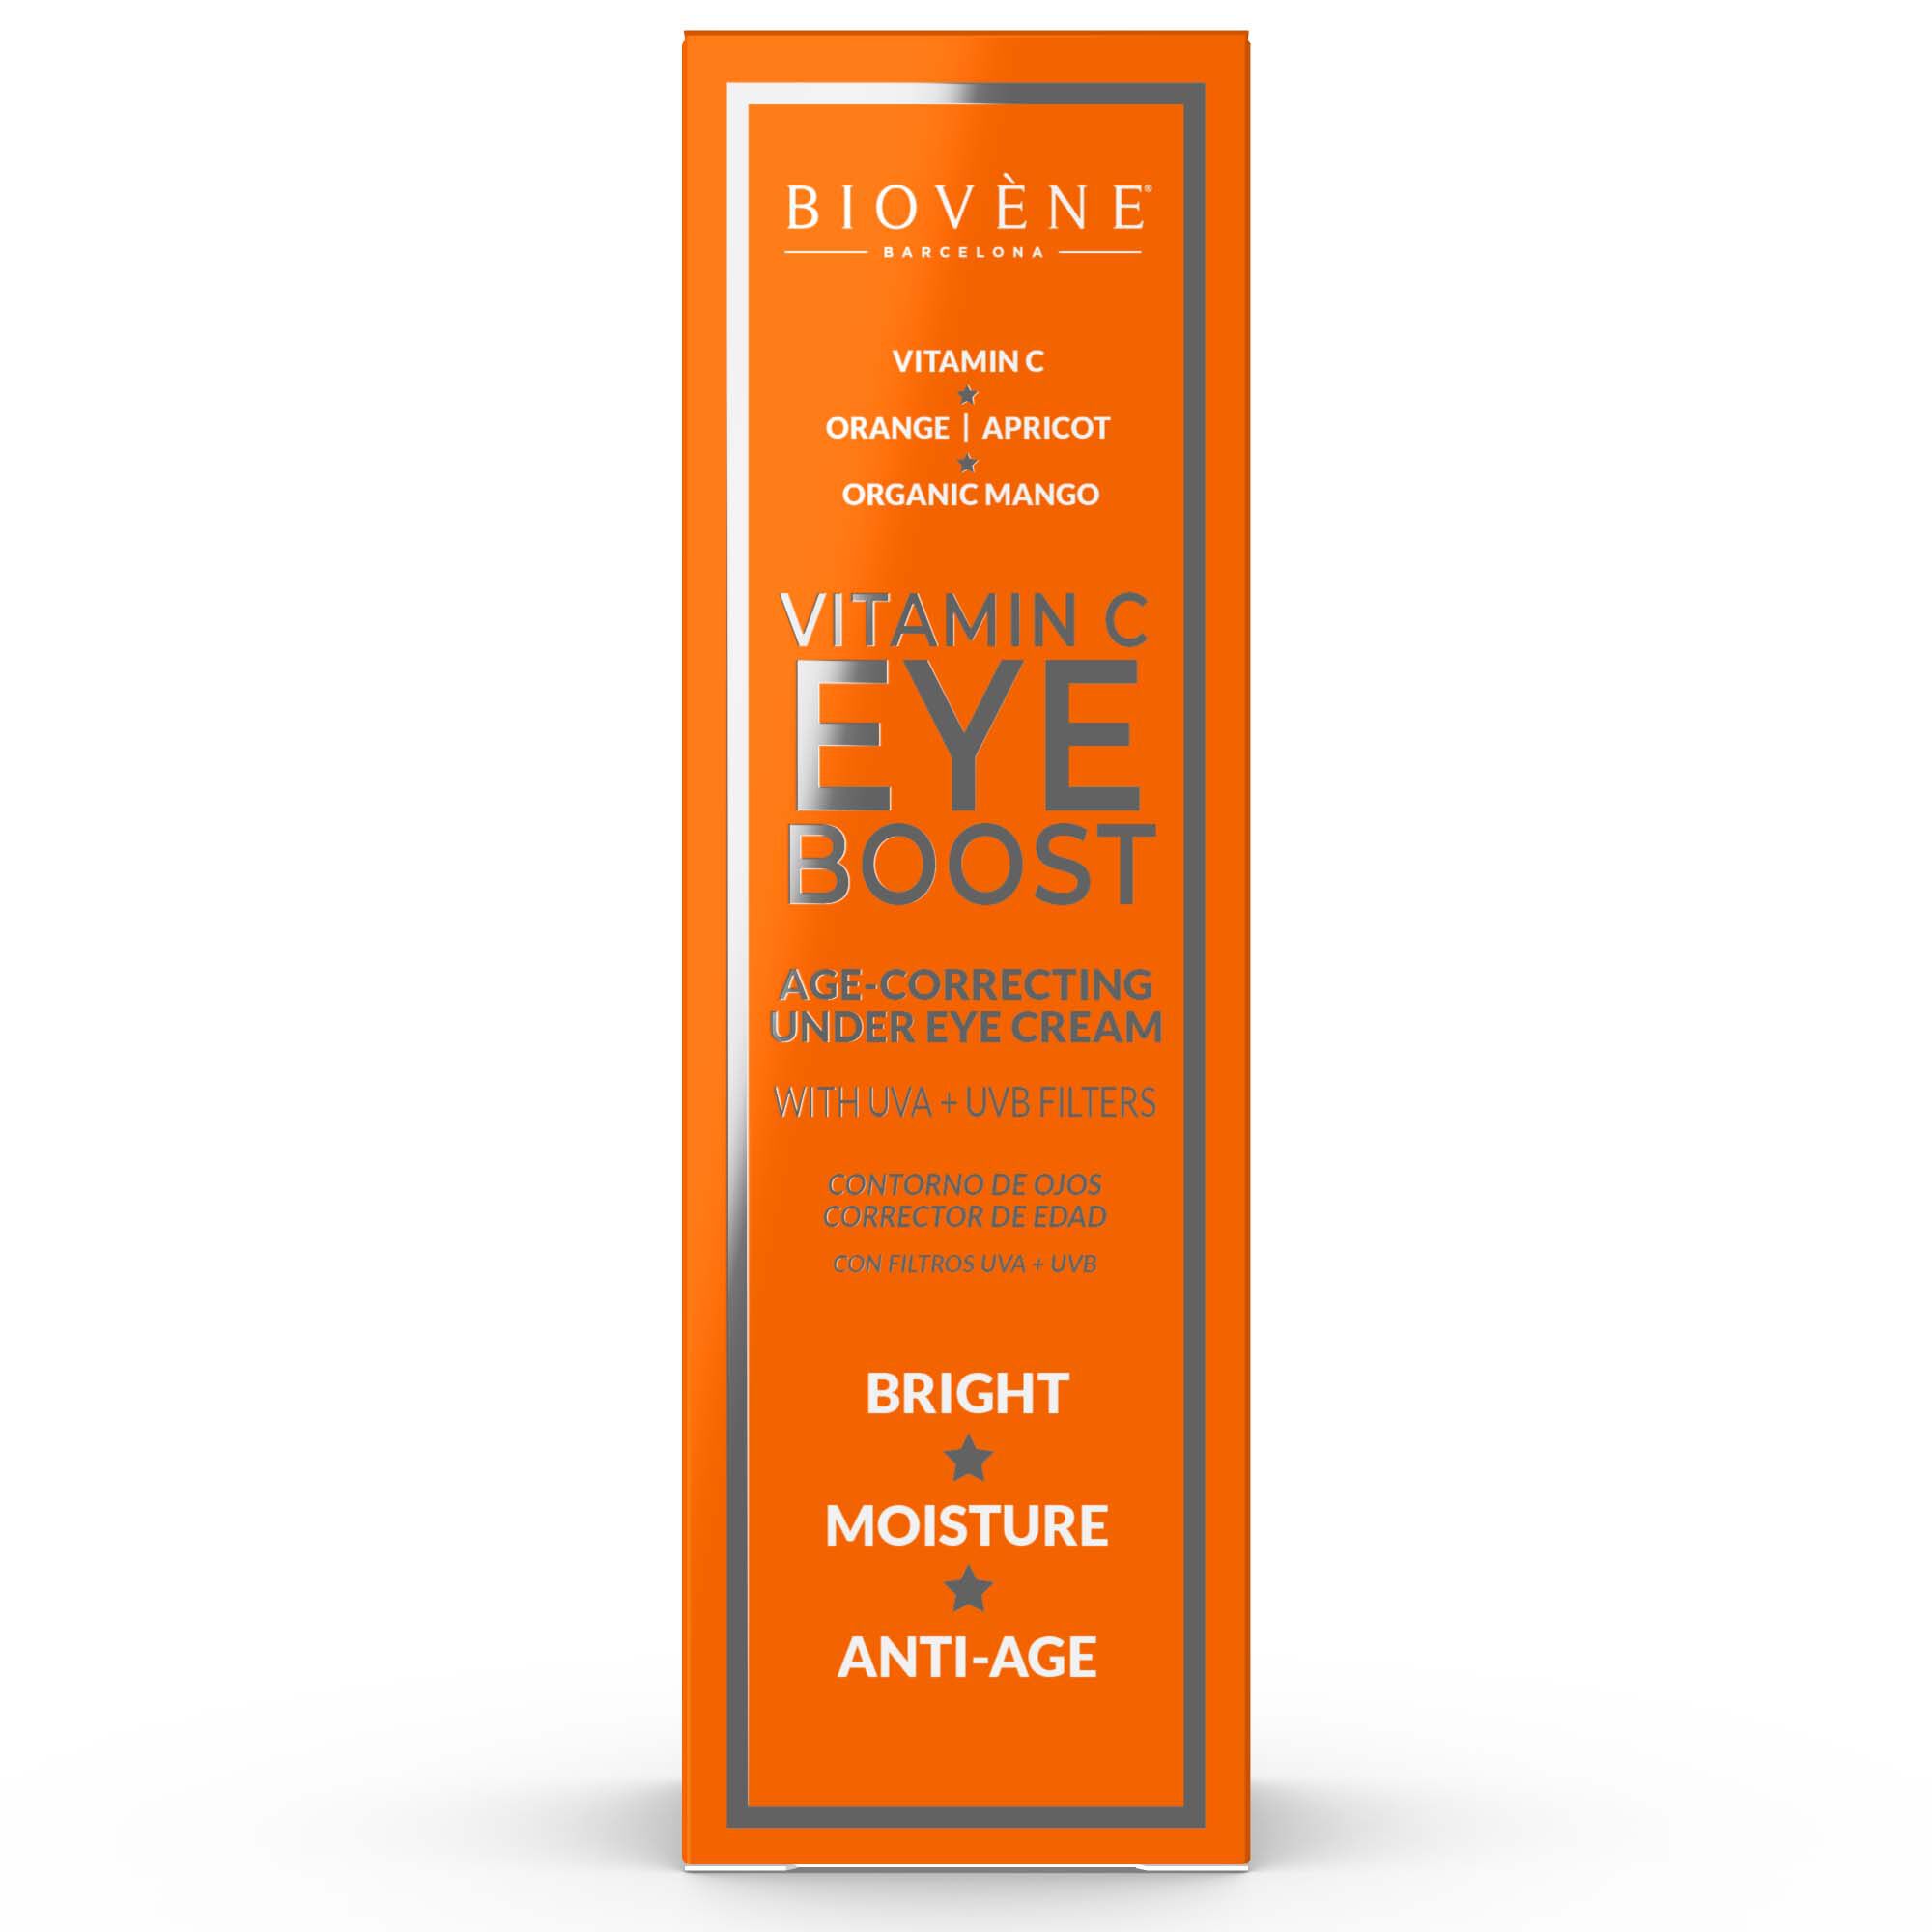 Увлажняющий крем для глаз Biovene Vitamin C, 30 мл reviderm eye c perfection крем с витамином с от темных кругов под глазами 15ml